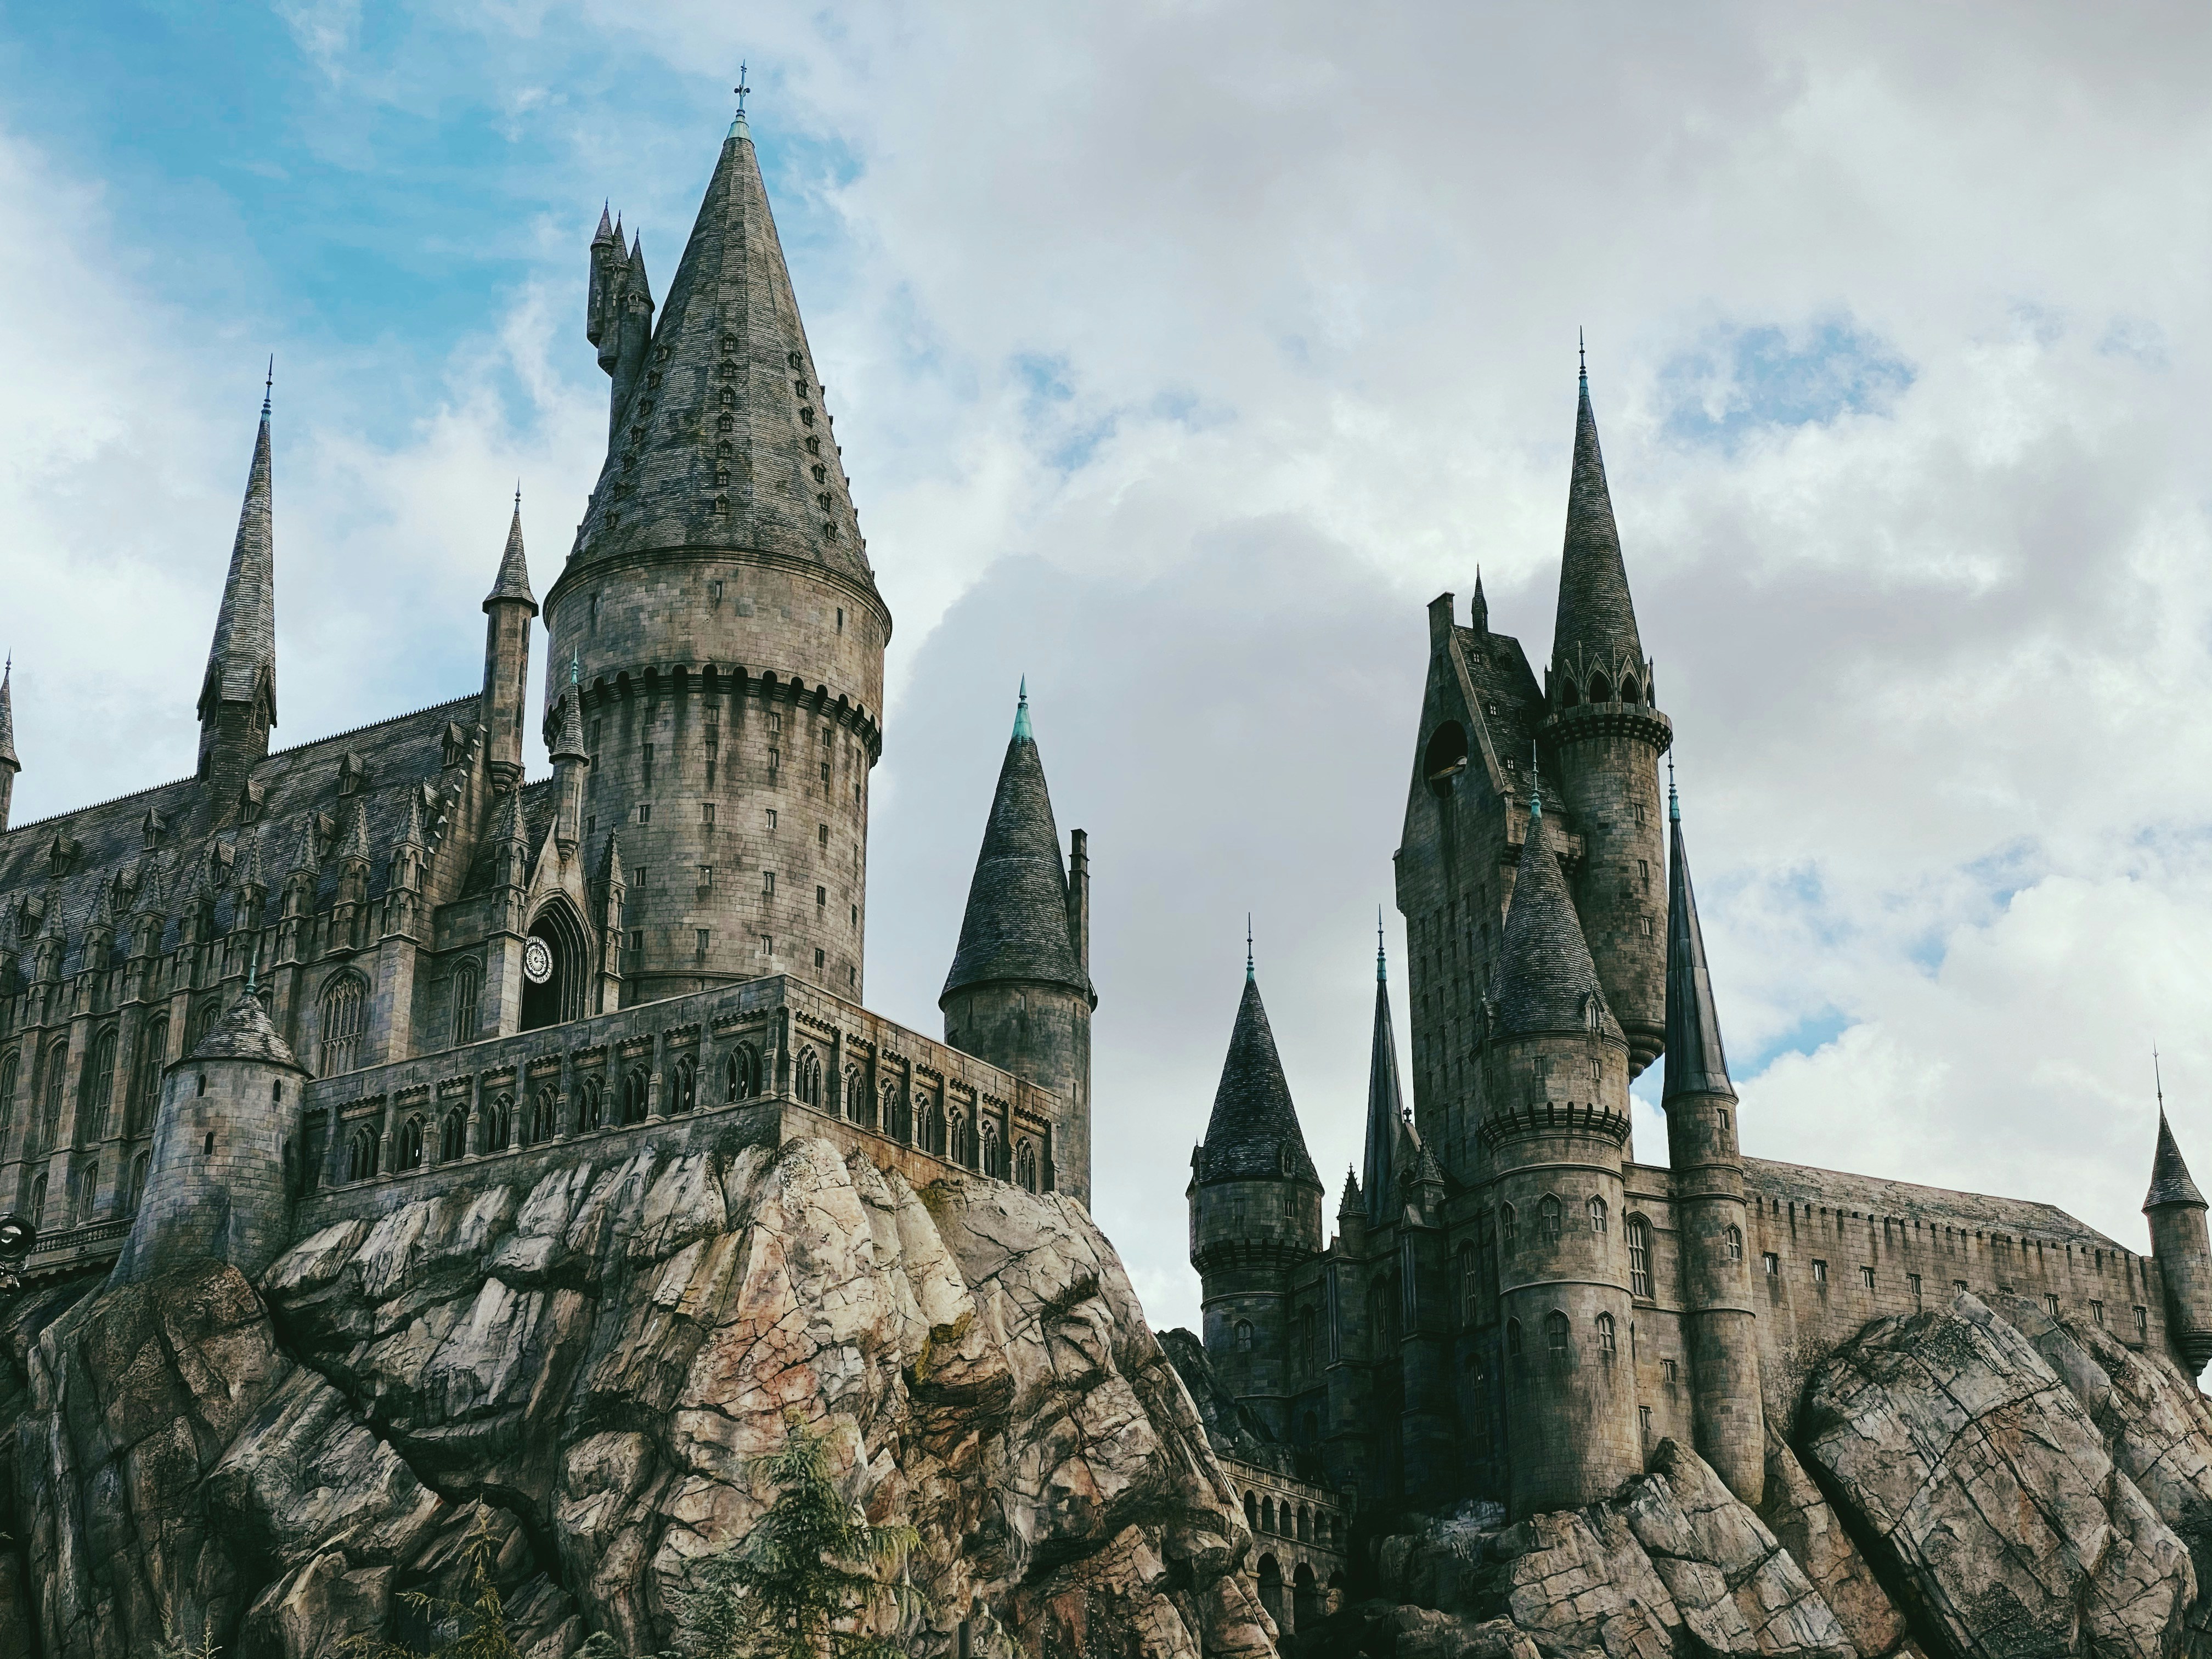 Hogwarts Legacy vendeu 12 milhões em duas semanas - Games - R7 Outer Space